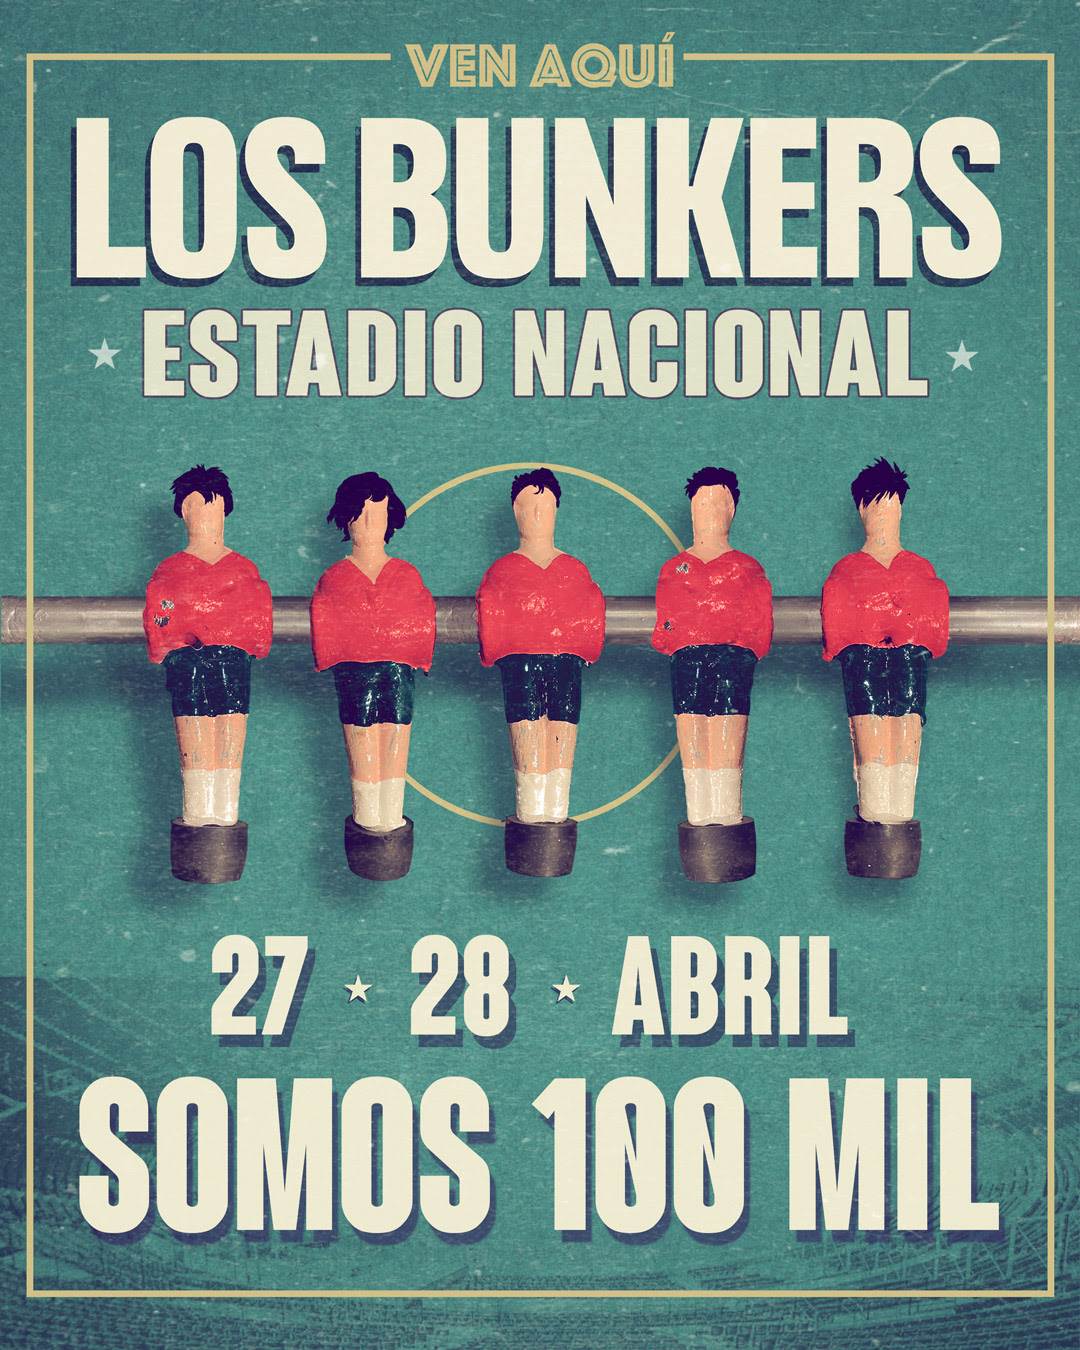 Los Bunkers se presentarán ante 100.000 personas en el Estadio Nacional